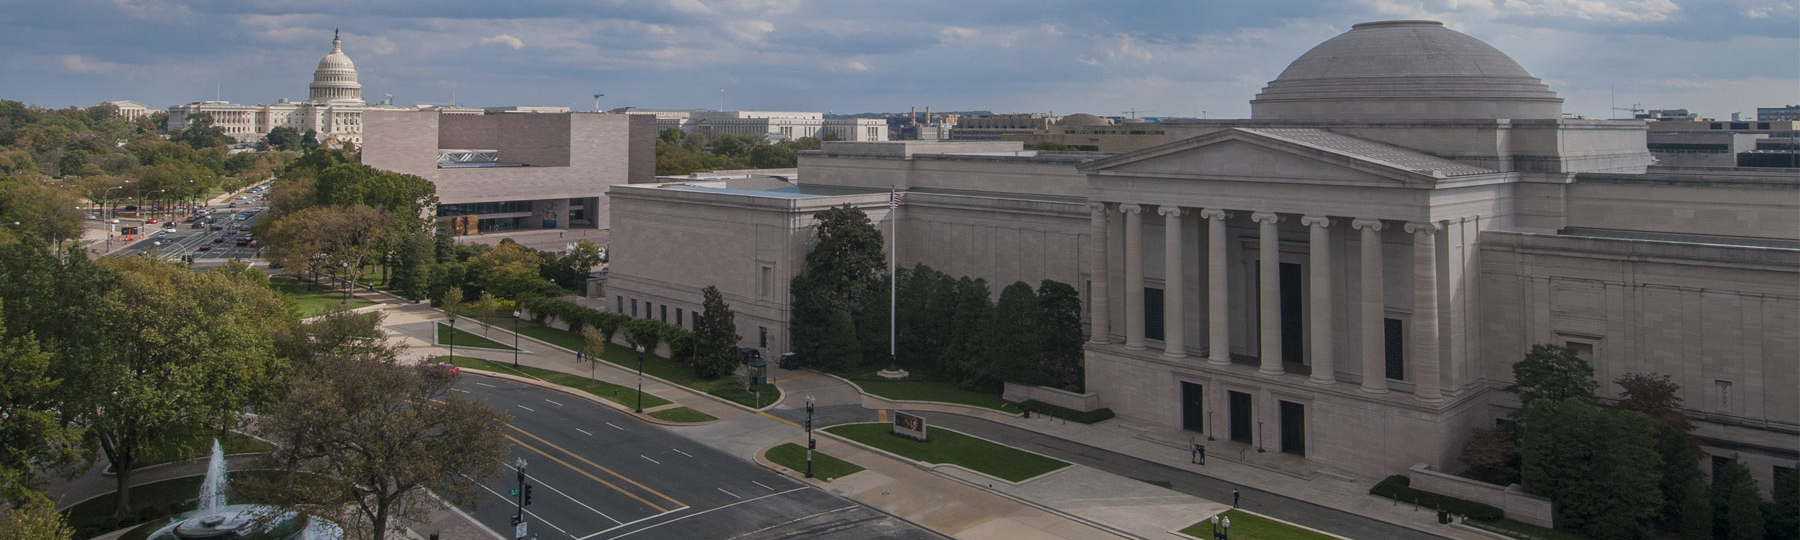 Foto aérea da Galeria Nacional de Arte dos edifícios leste e oeste